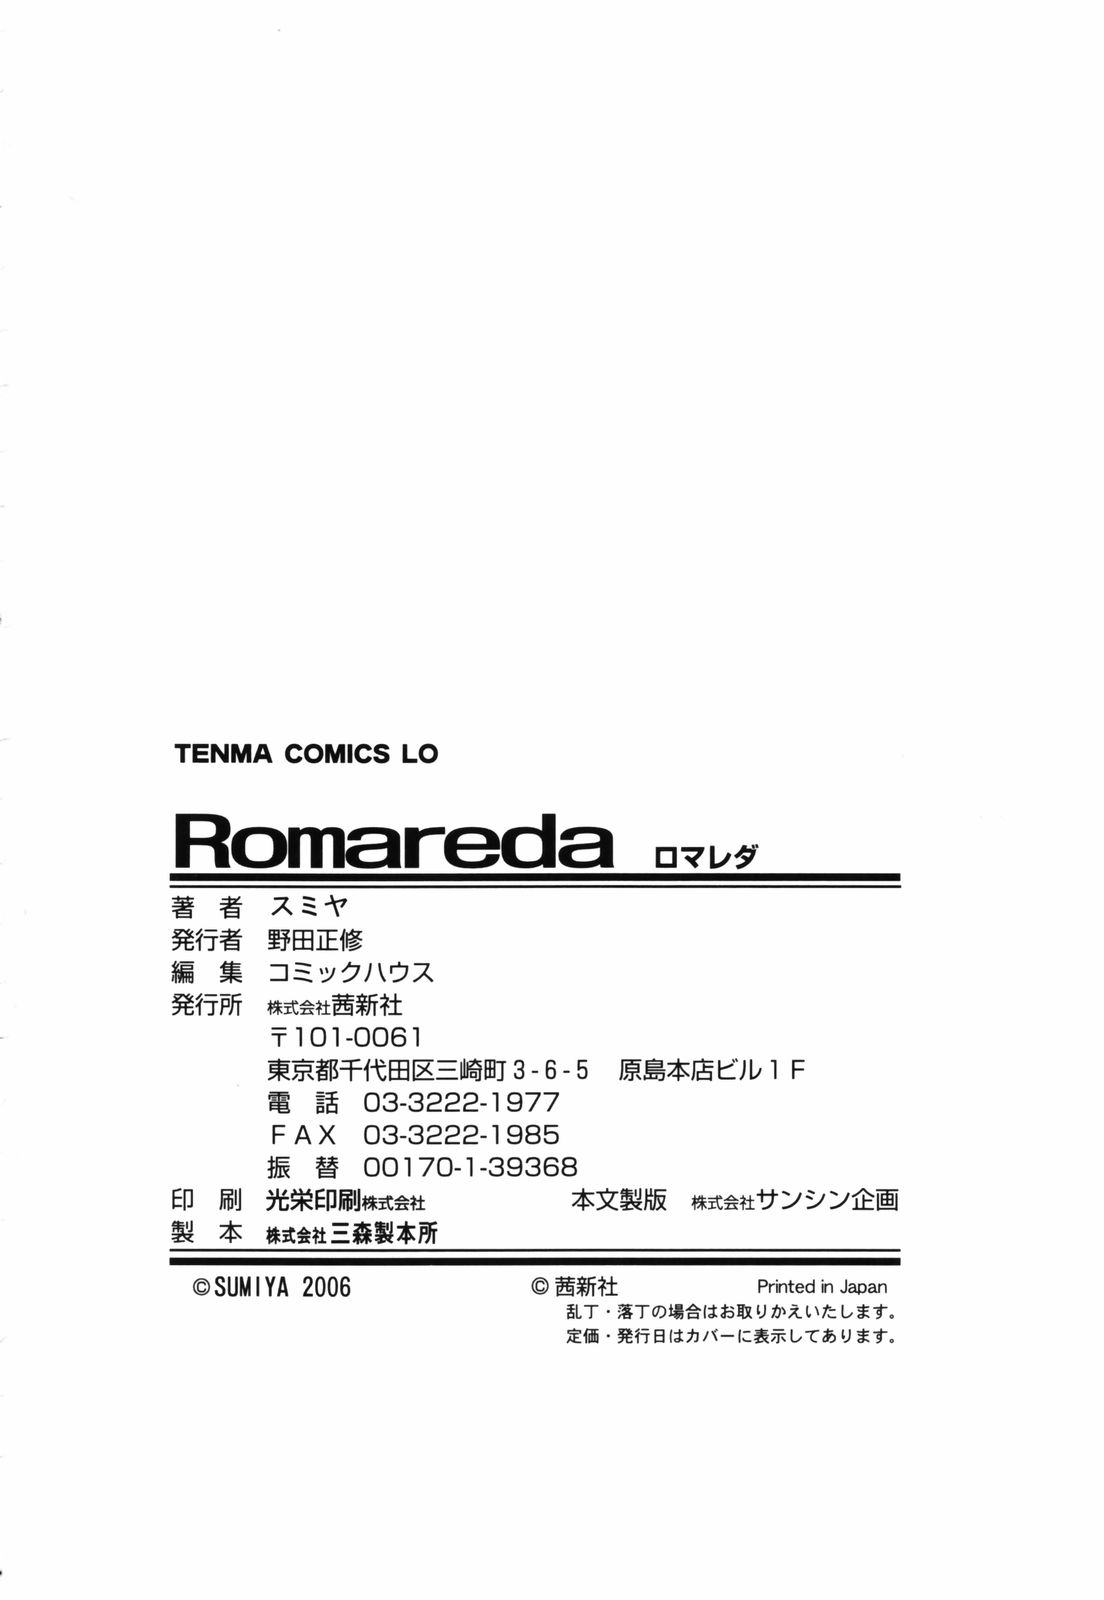 [スミヤ] Romareda -ロマレダ-